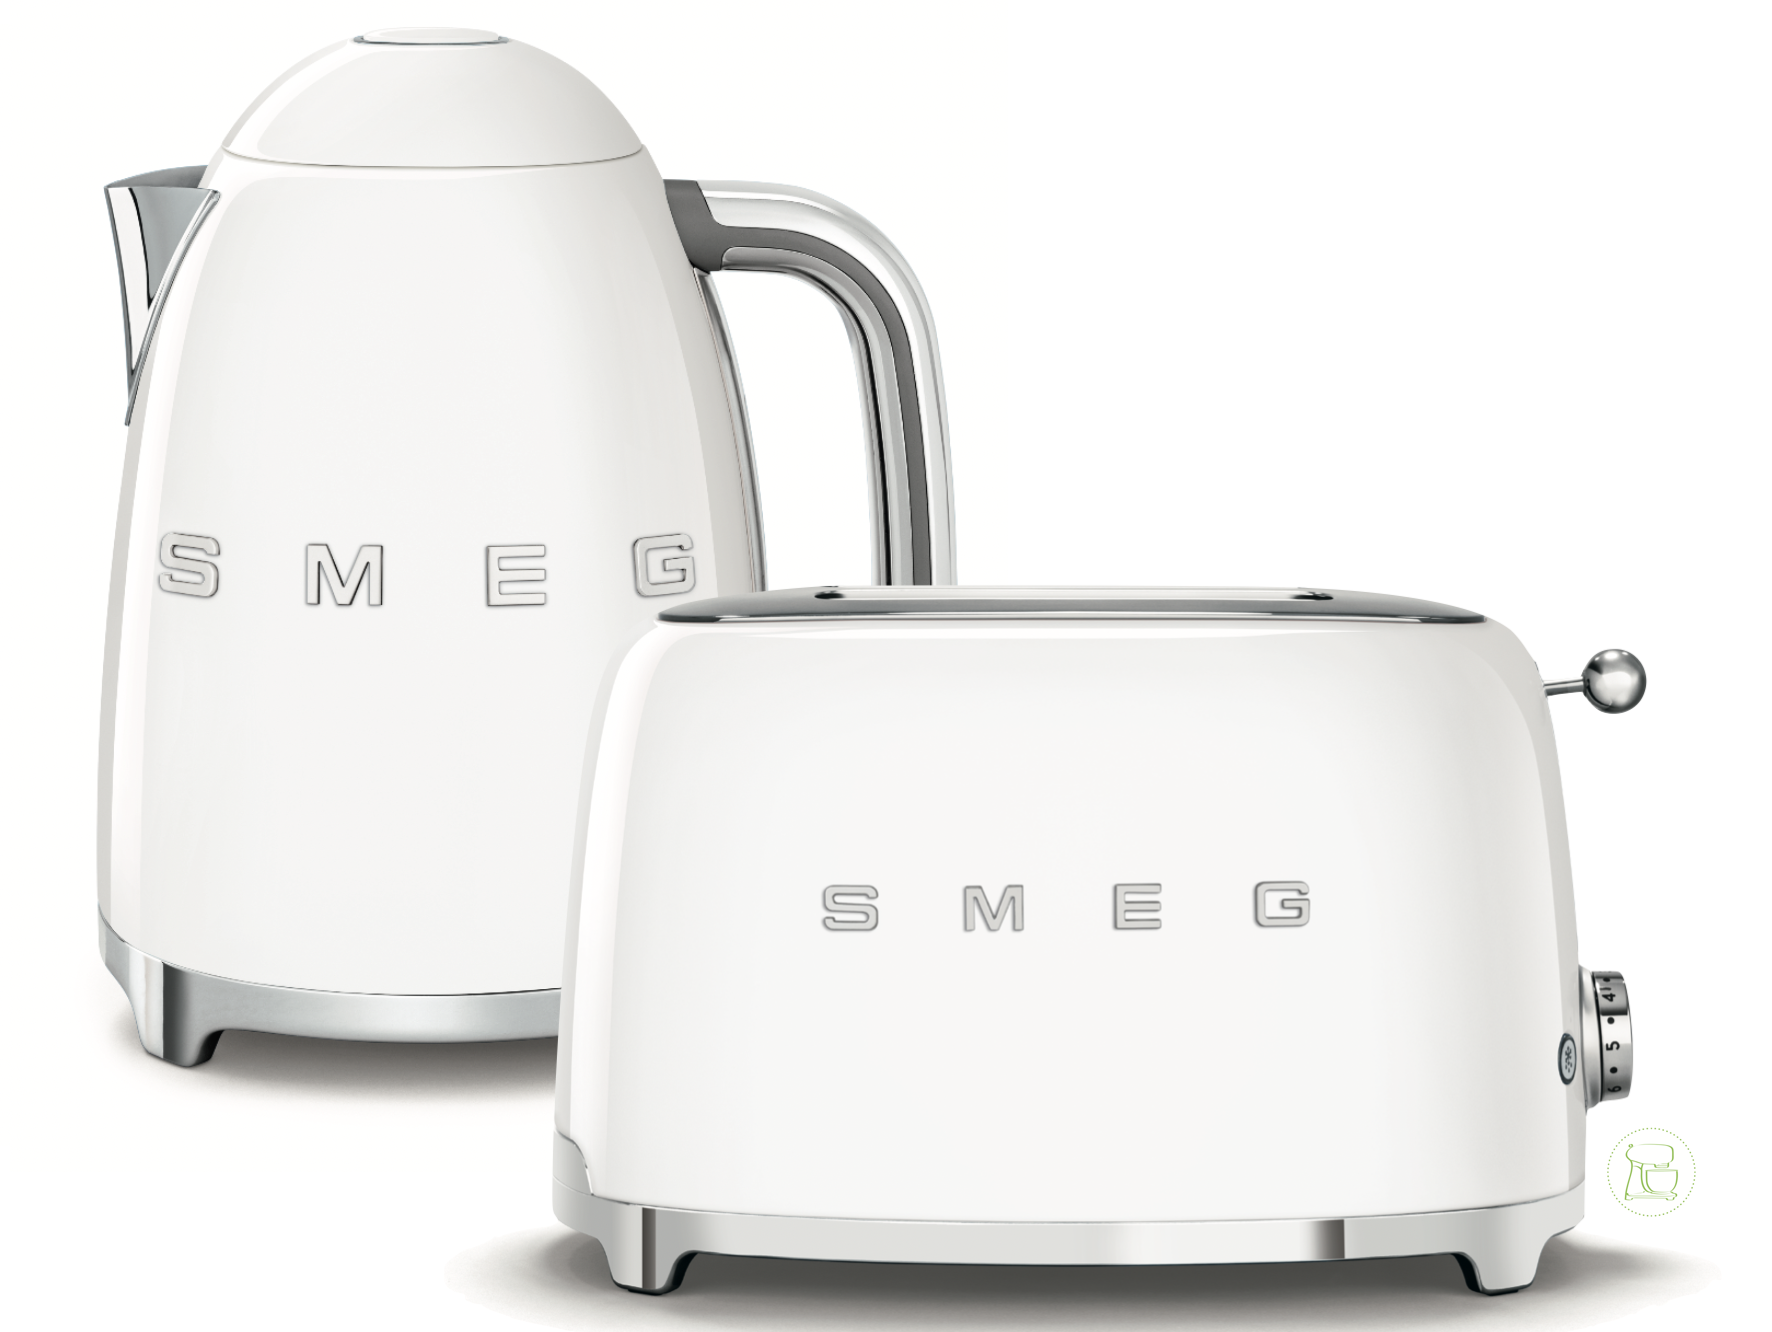 SMEG Wasserkocher - Toaster Set Weiss